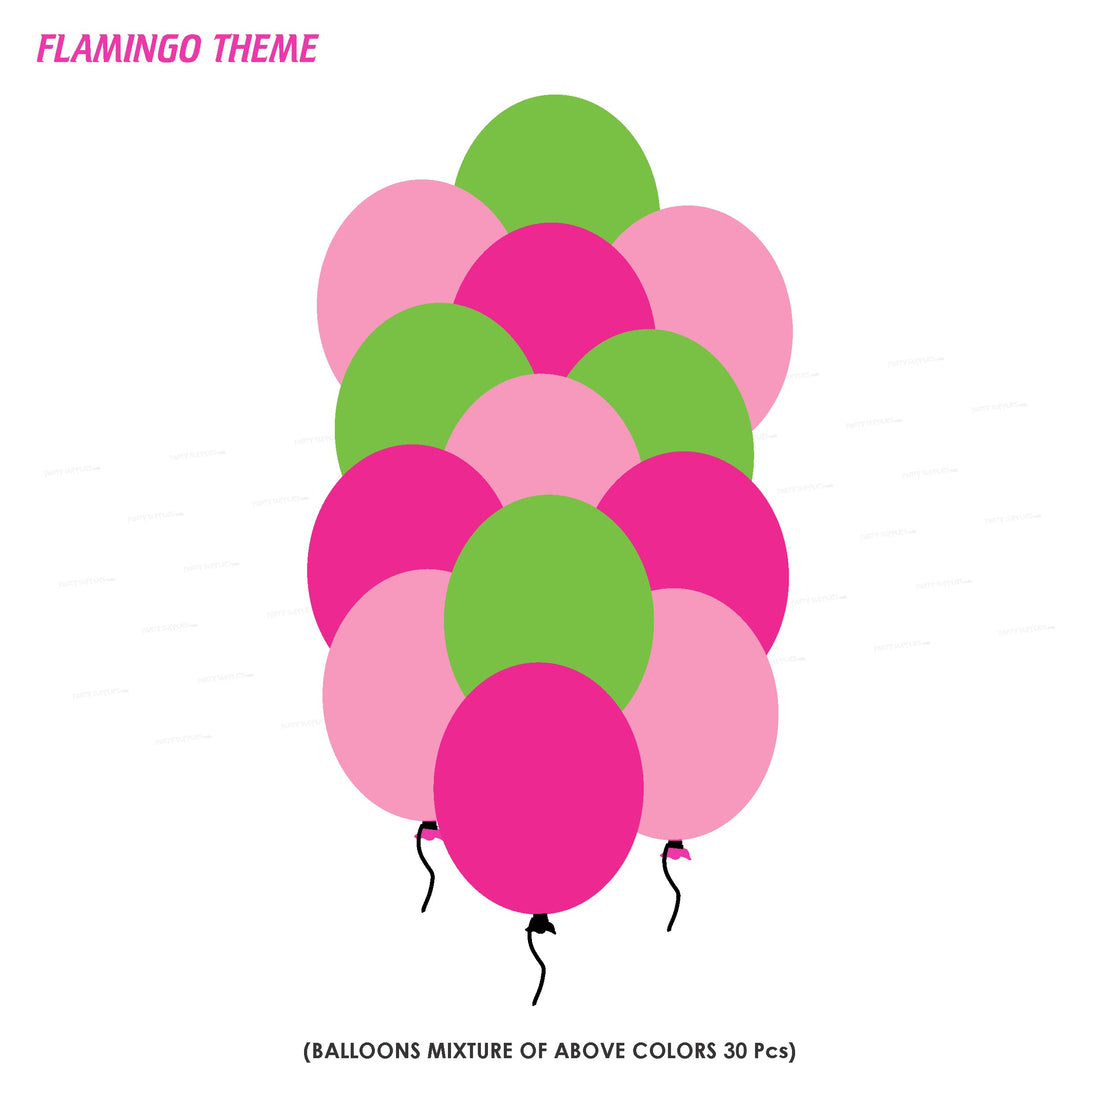 PSI Flamingo Theme Colour 30 Pcs. Balloons